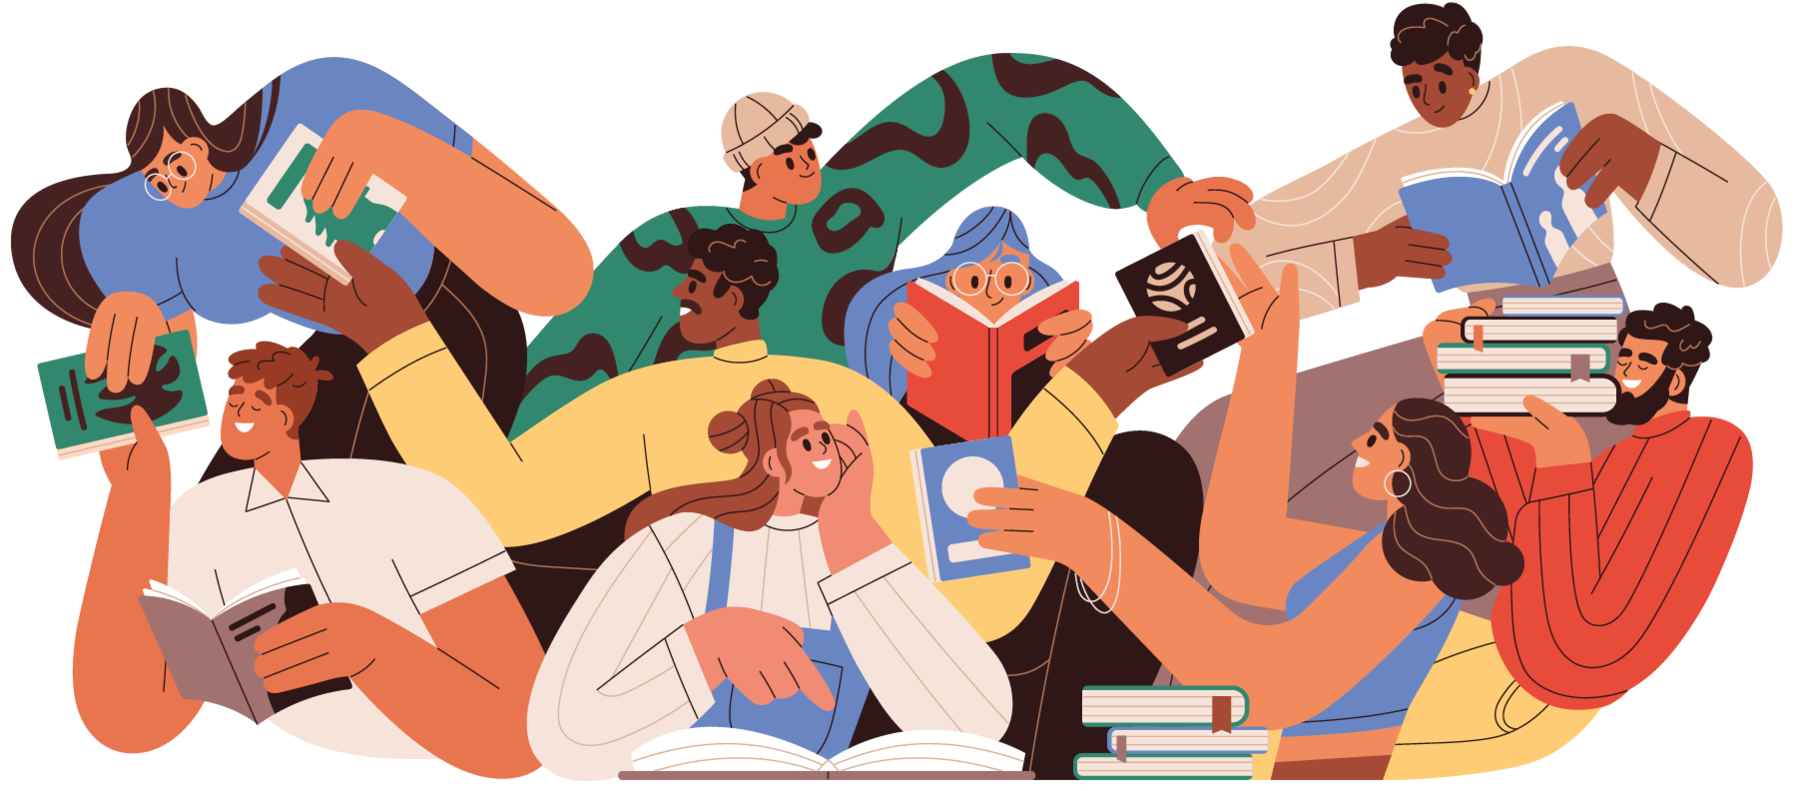 Ilustração. Um grupo de jovens com diferentes características físicas sorri, lê e troca livros entre si.